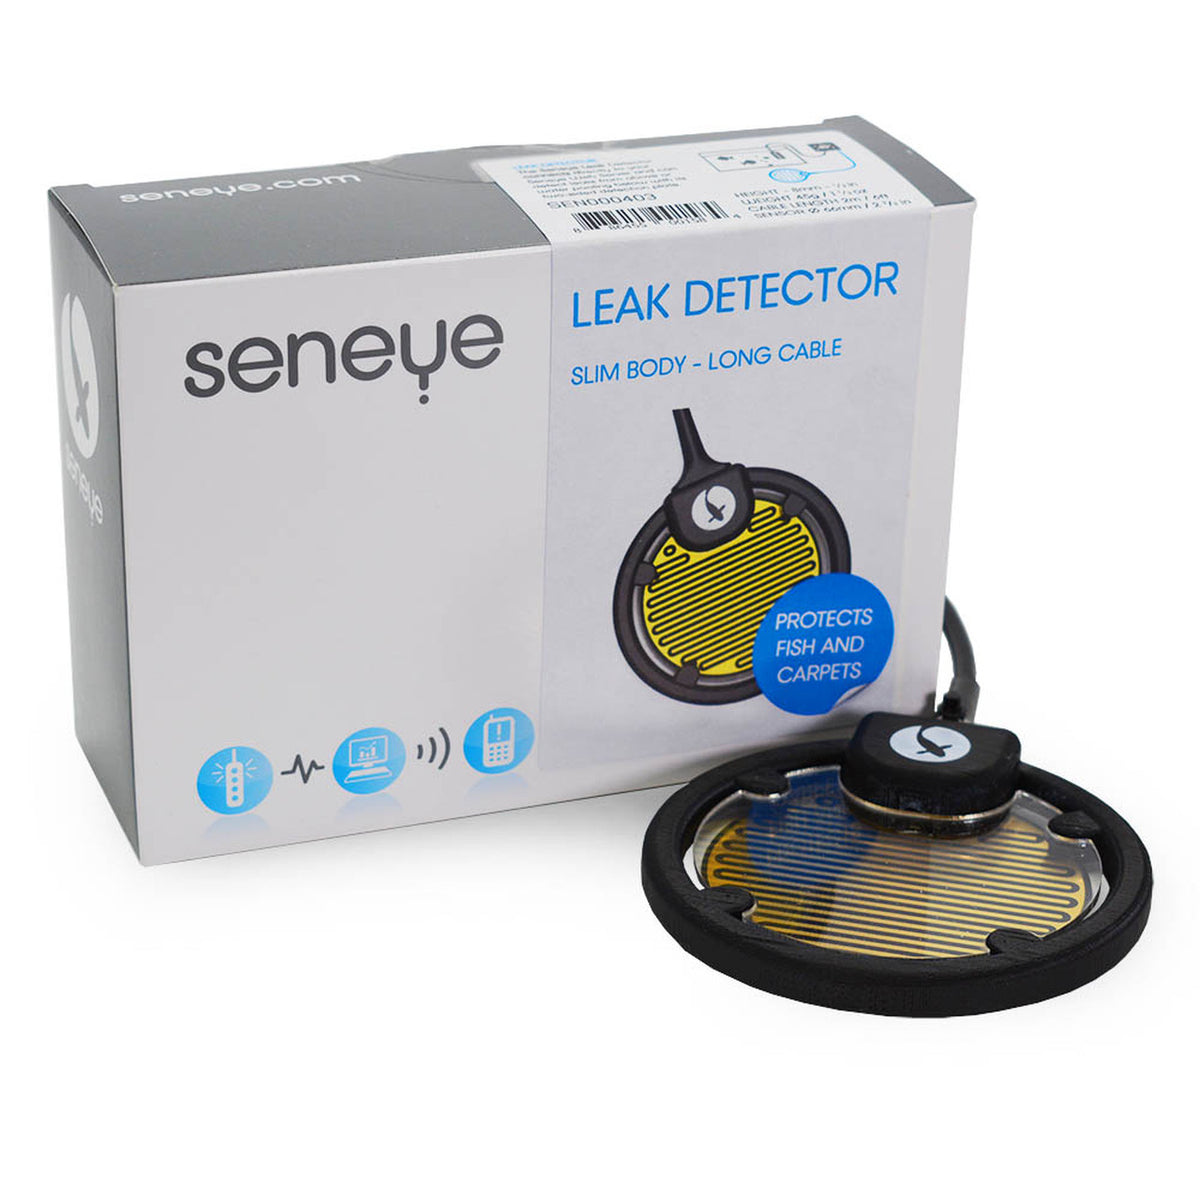 Seneye Leak Detector Slim